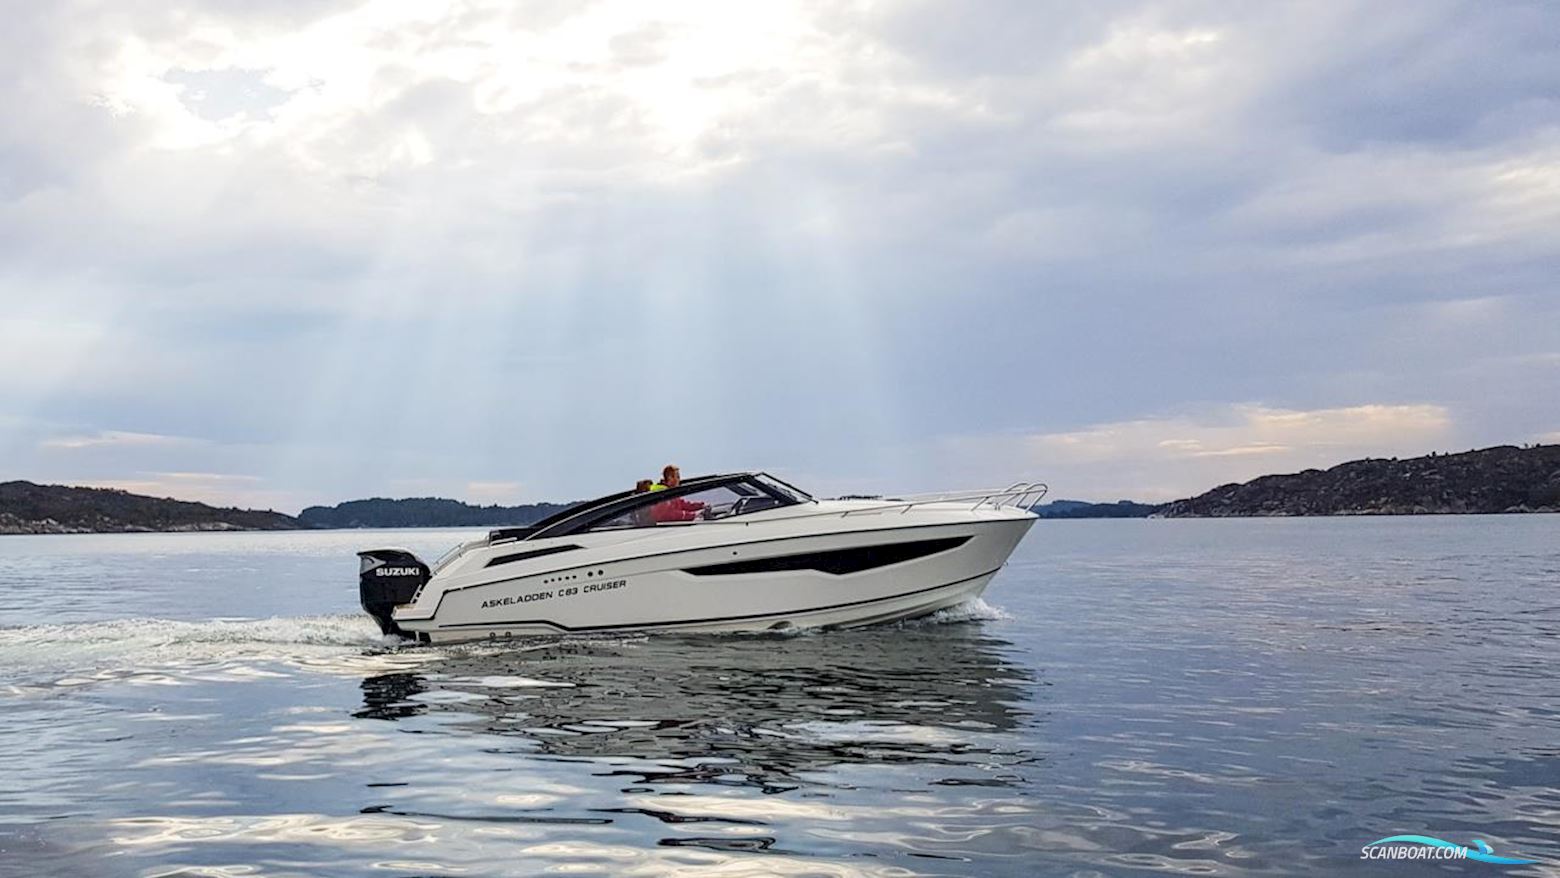 Askeladden C83 Cruiser Tsi Motorboot 2023, mit Suzuki motor, Sweden